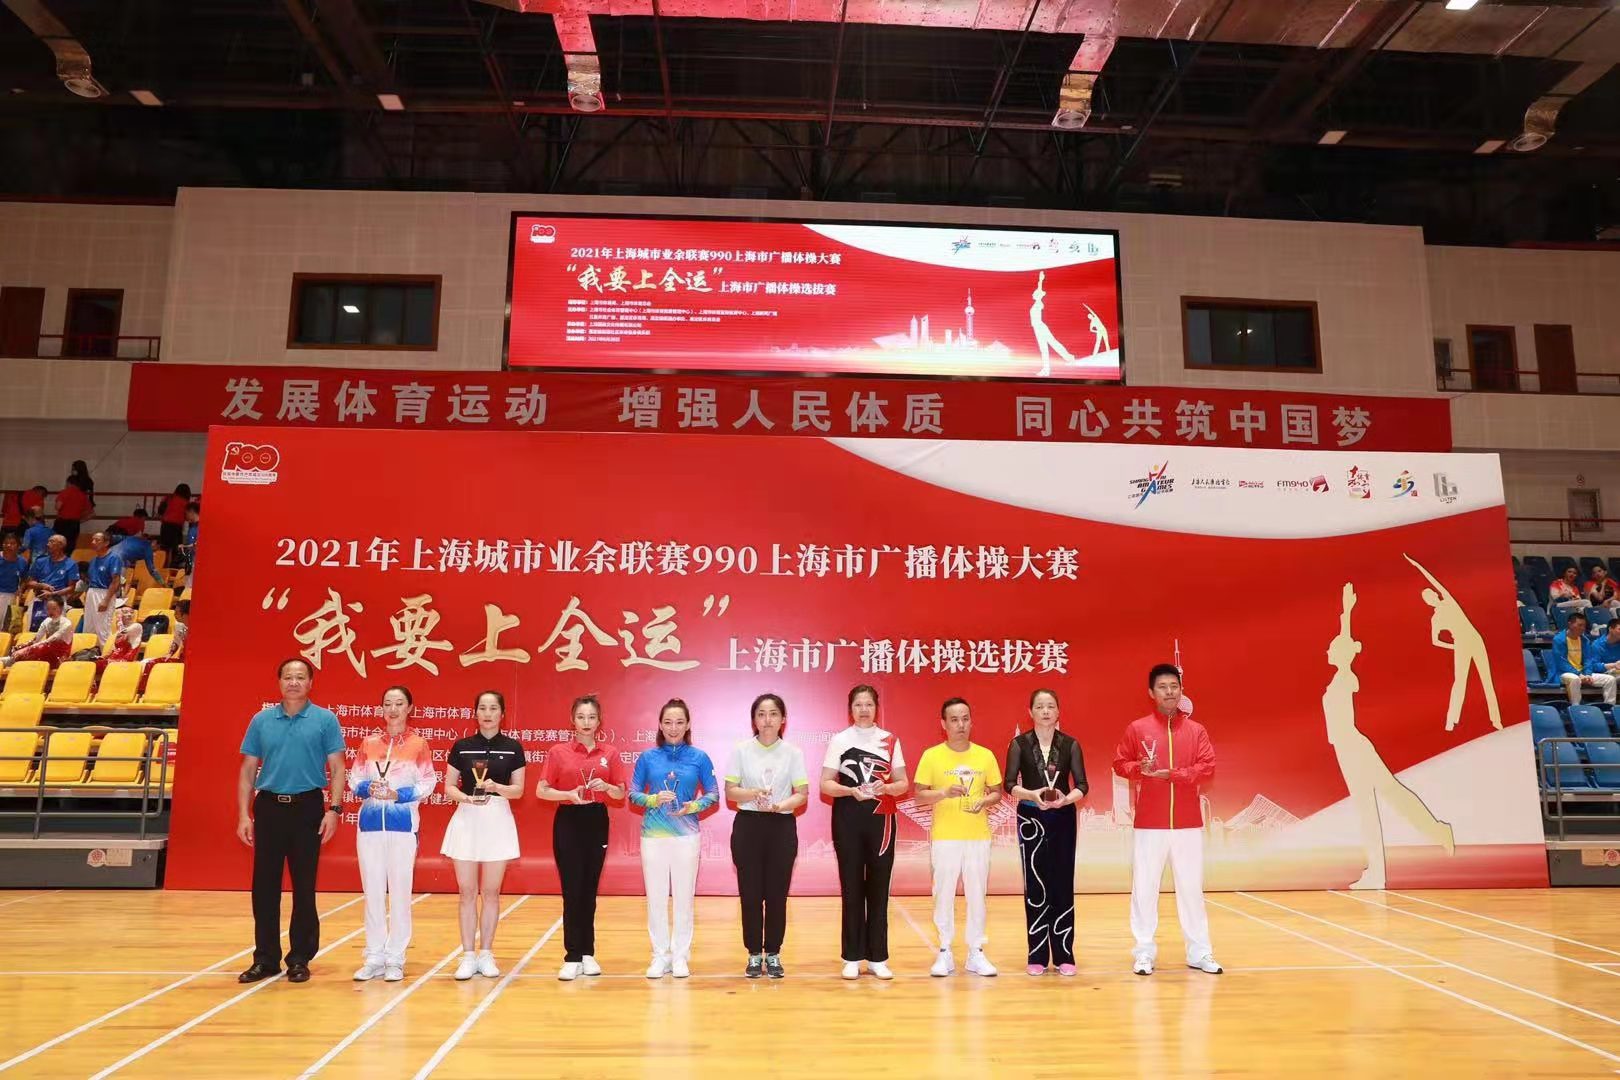 2021“我要上全运”上海市广播体操选拔赛举行